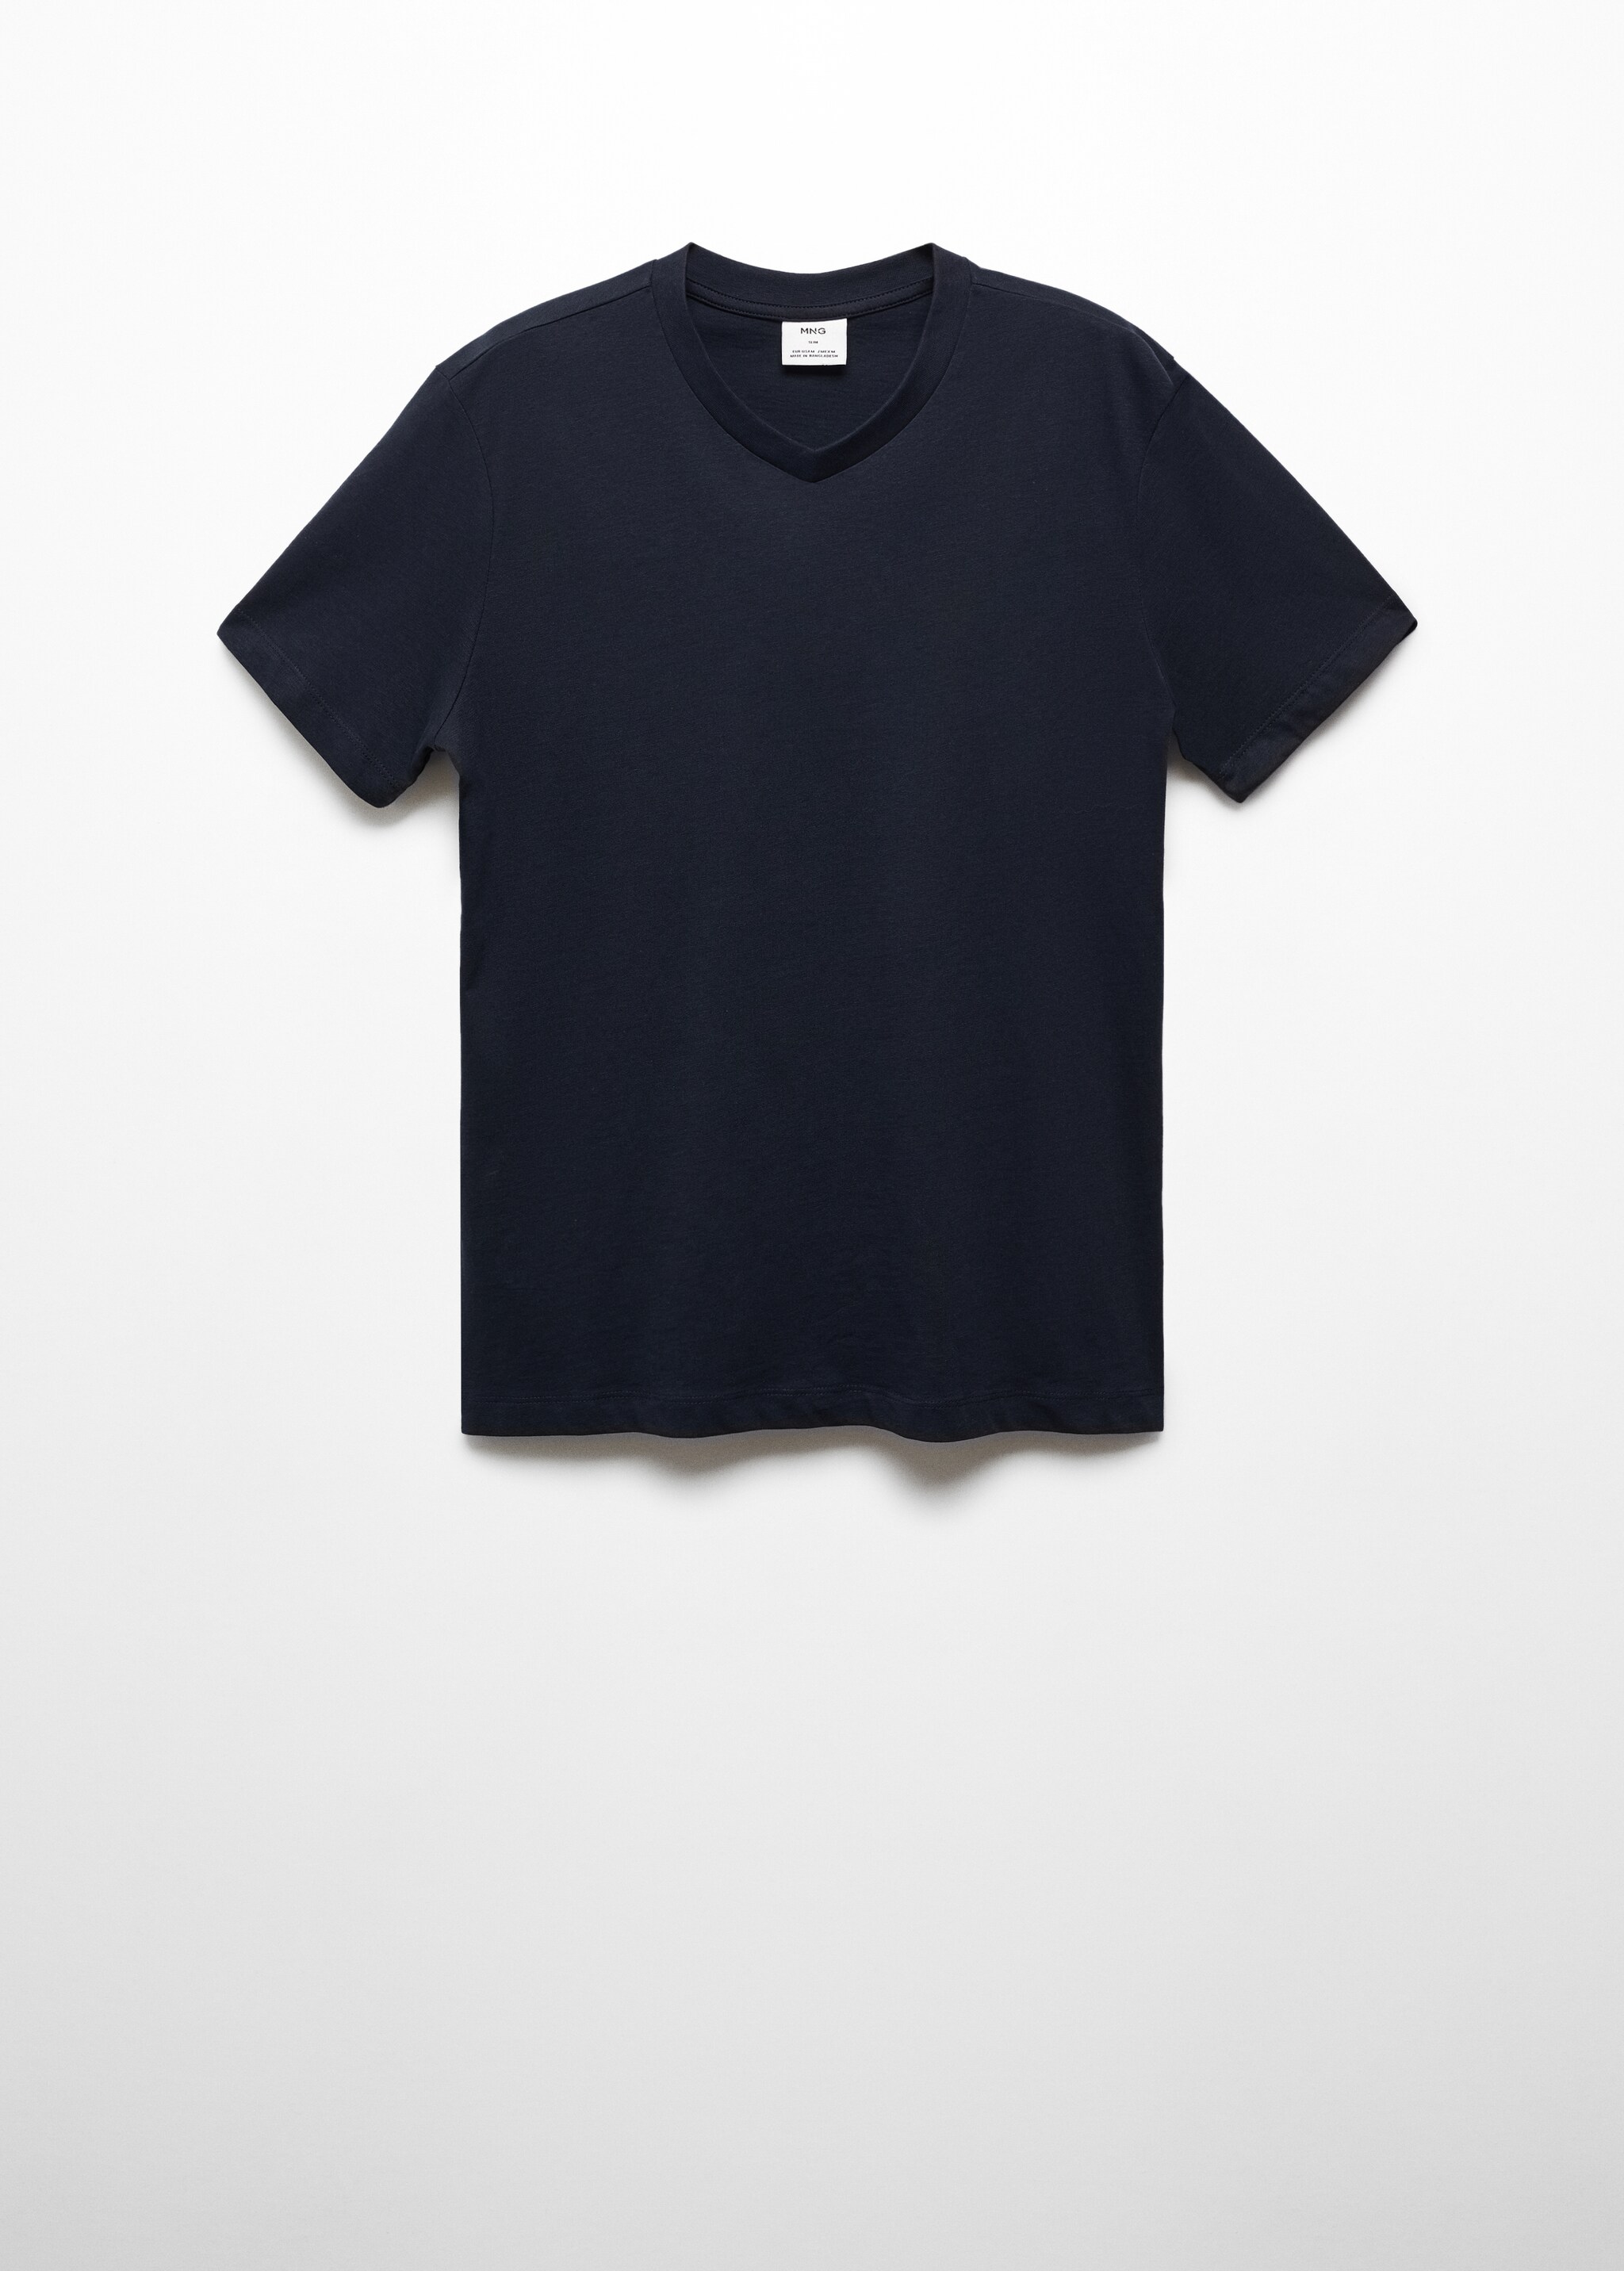 T-shirt básica de algodão com gola em V - Artigo sem modelo